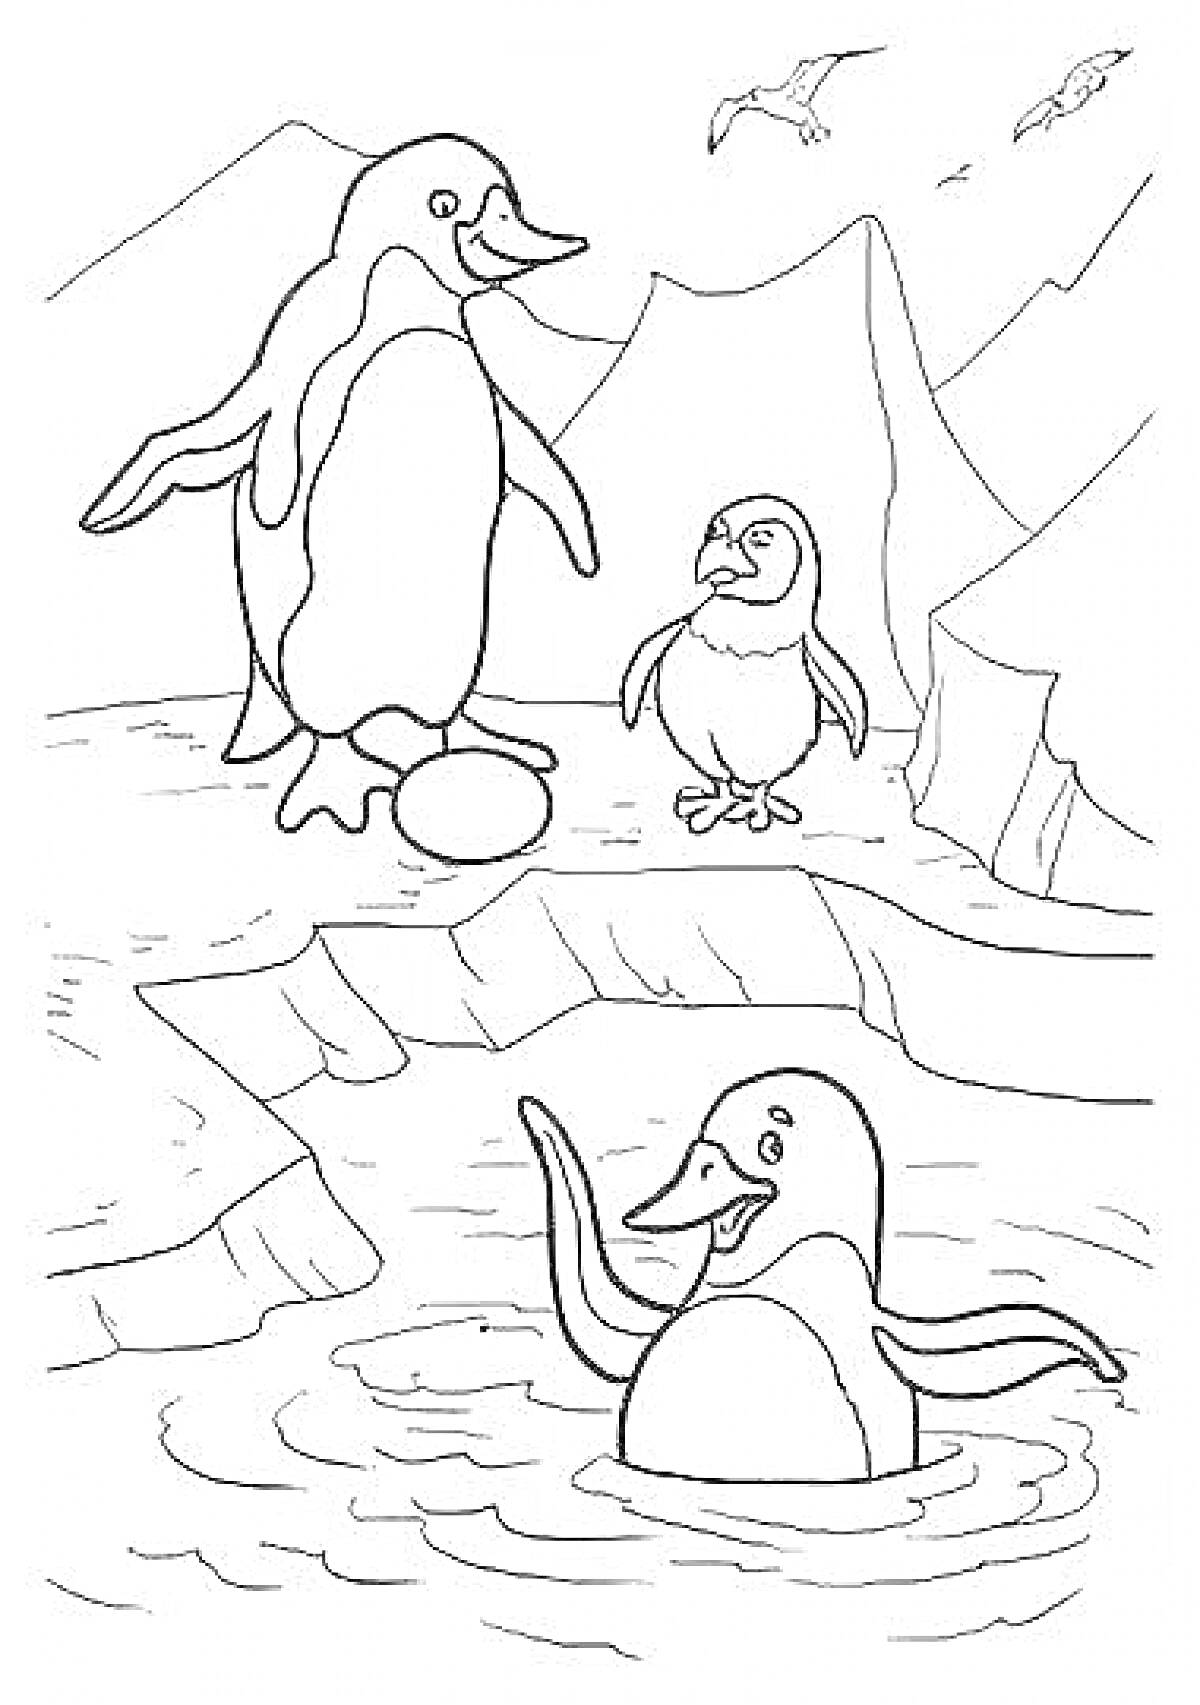 Пингвины на льдине с яйцом, двумя птенцами и морем на фоне гор и летящих птиц